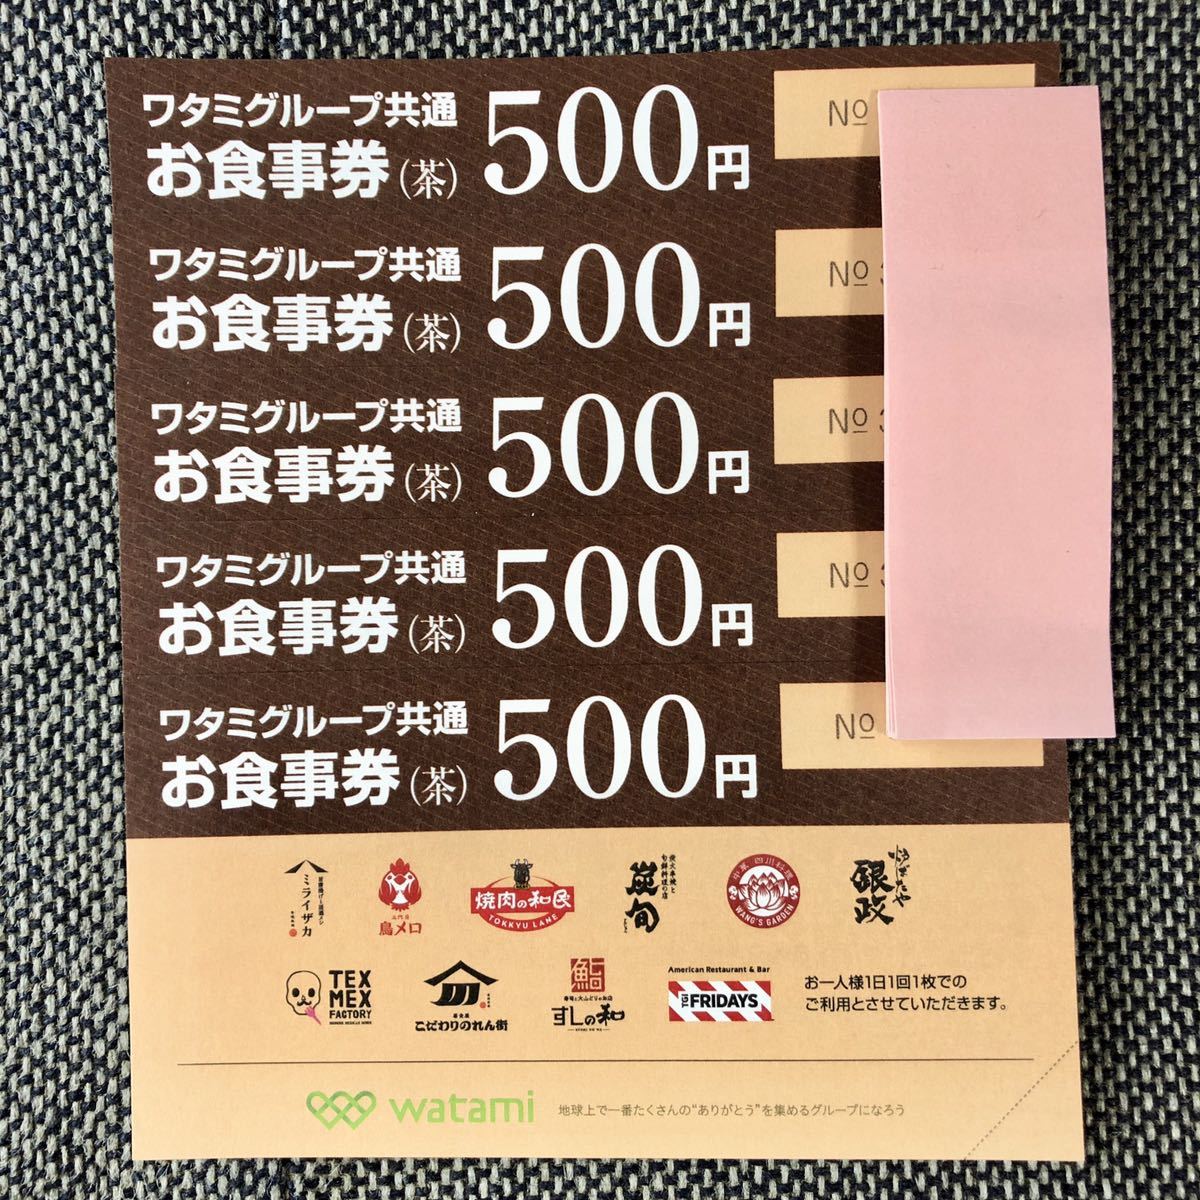 日本未発売】 ワタミグループ共通お食事券 茶 500円×5枚 tco.it